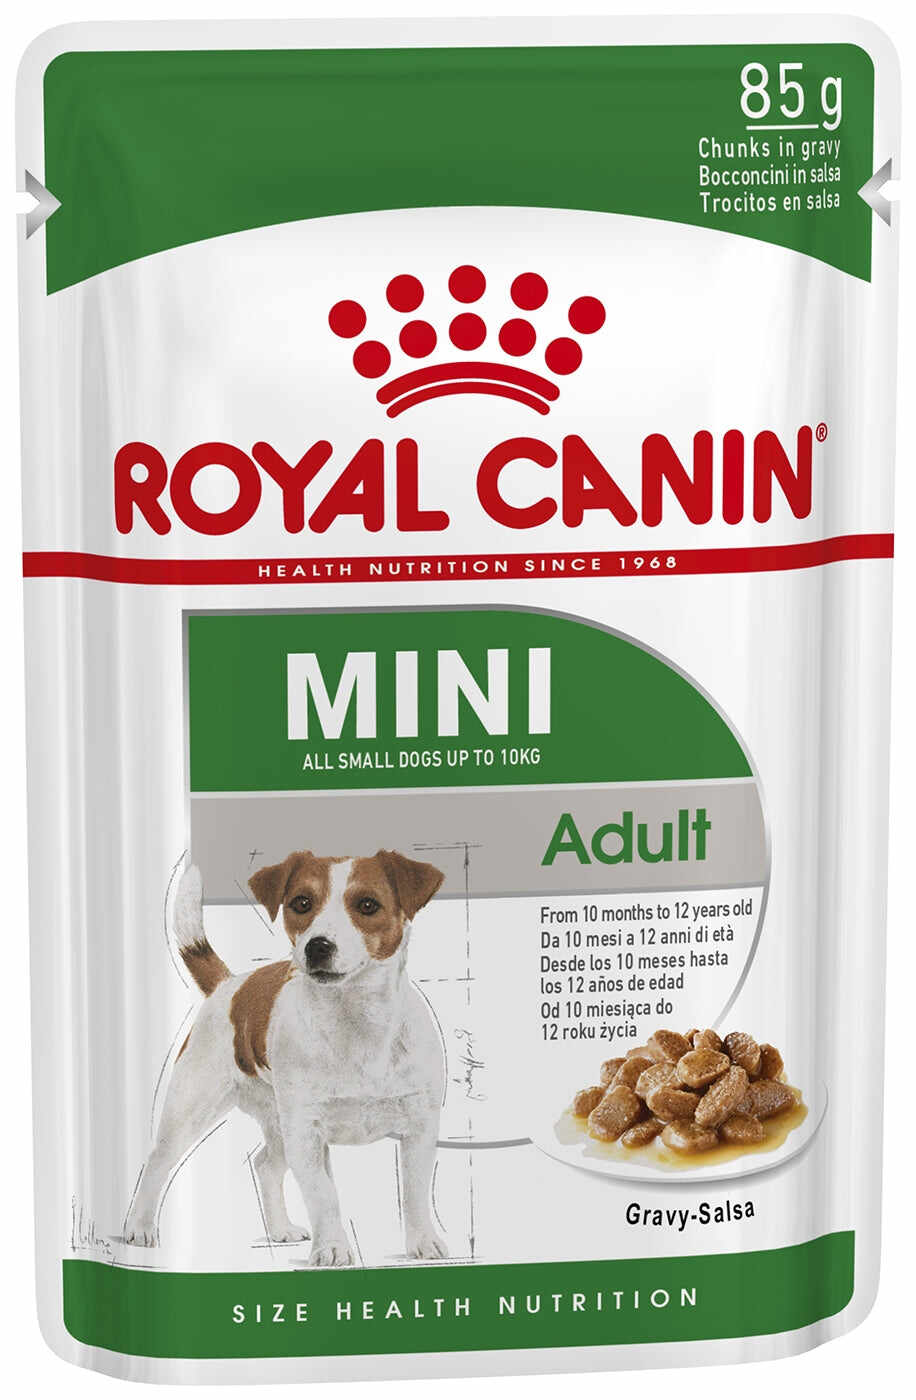 Hrana umeda pentru caini Royal Canin Mini Adult 85g